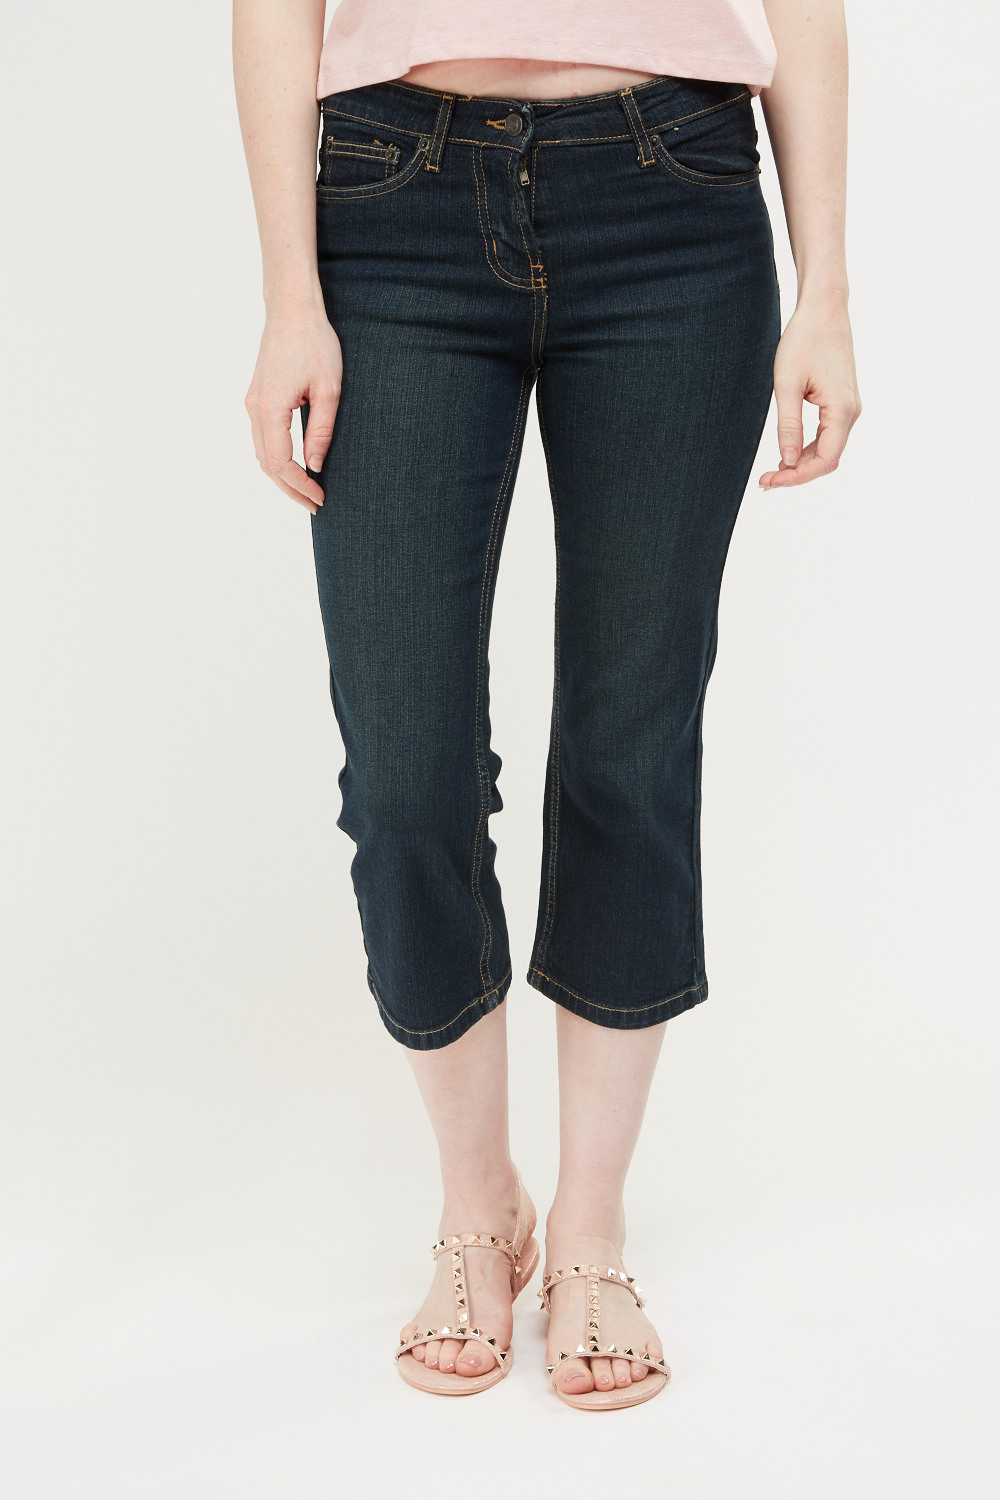 Low Waist Capri Denim Jeans - Just $7